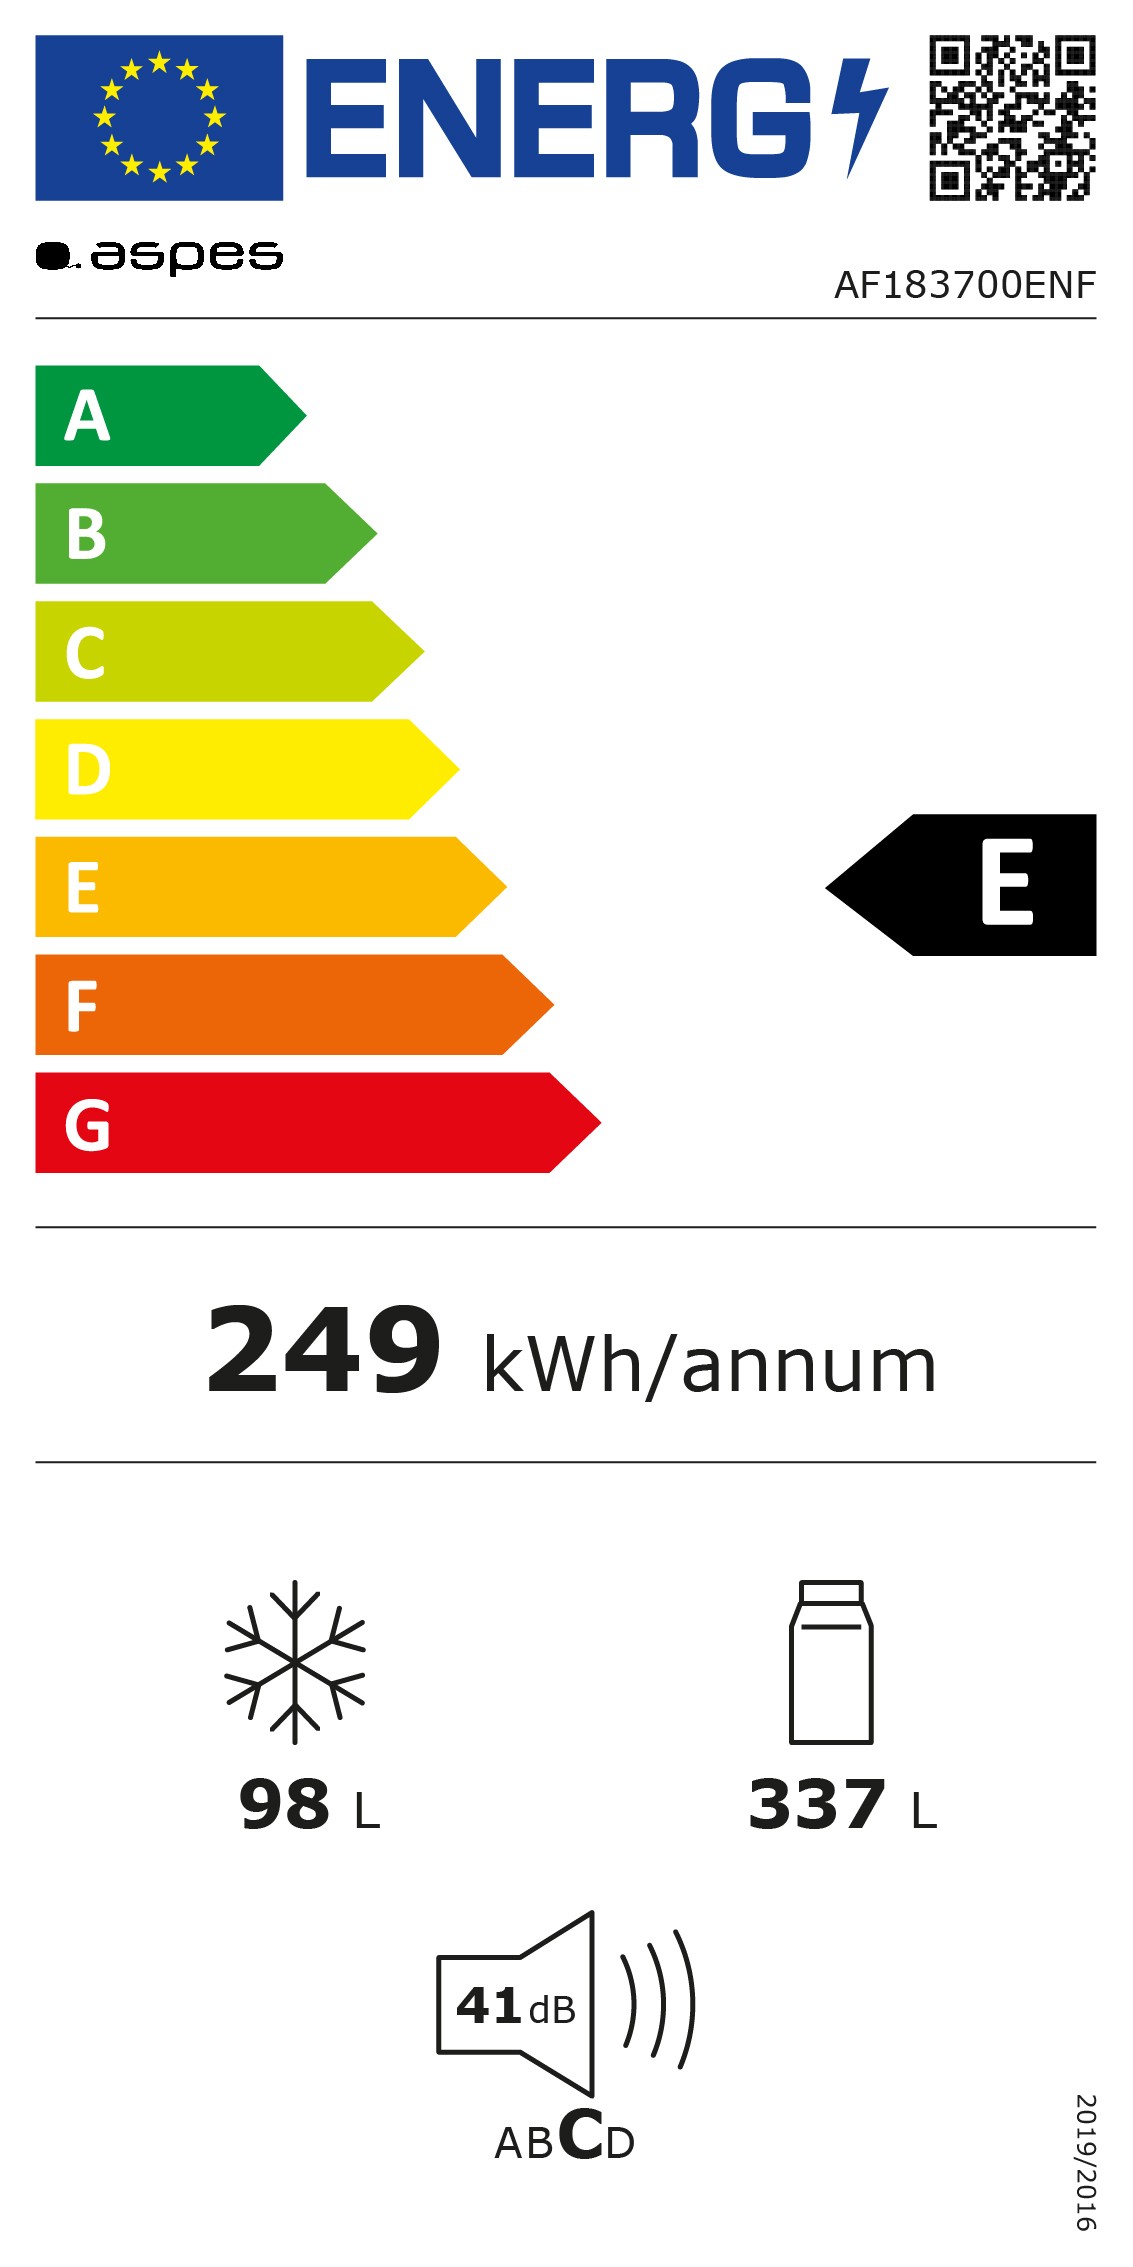 Etiqueta de Eficiencia Energética - AF183700ENF